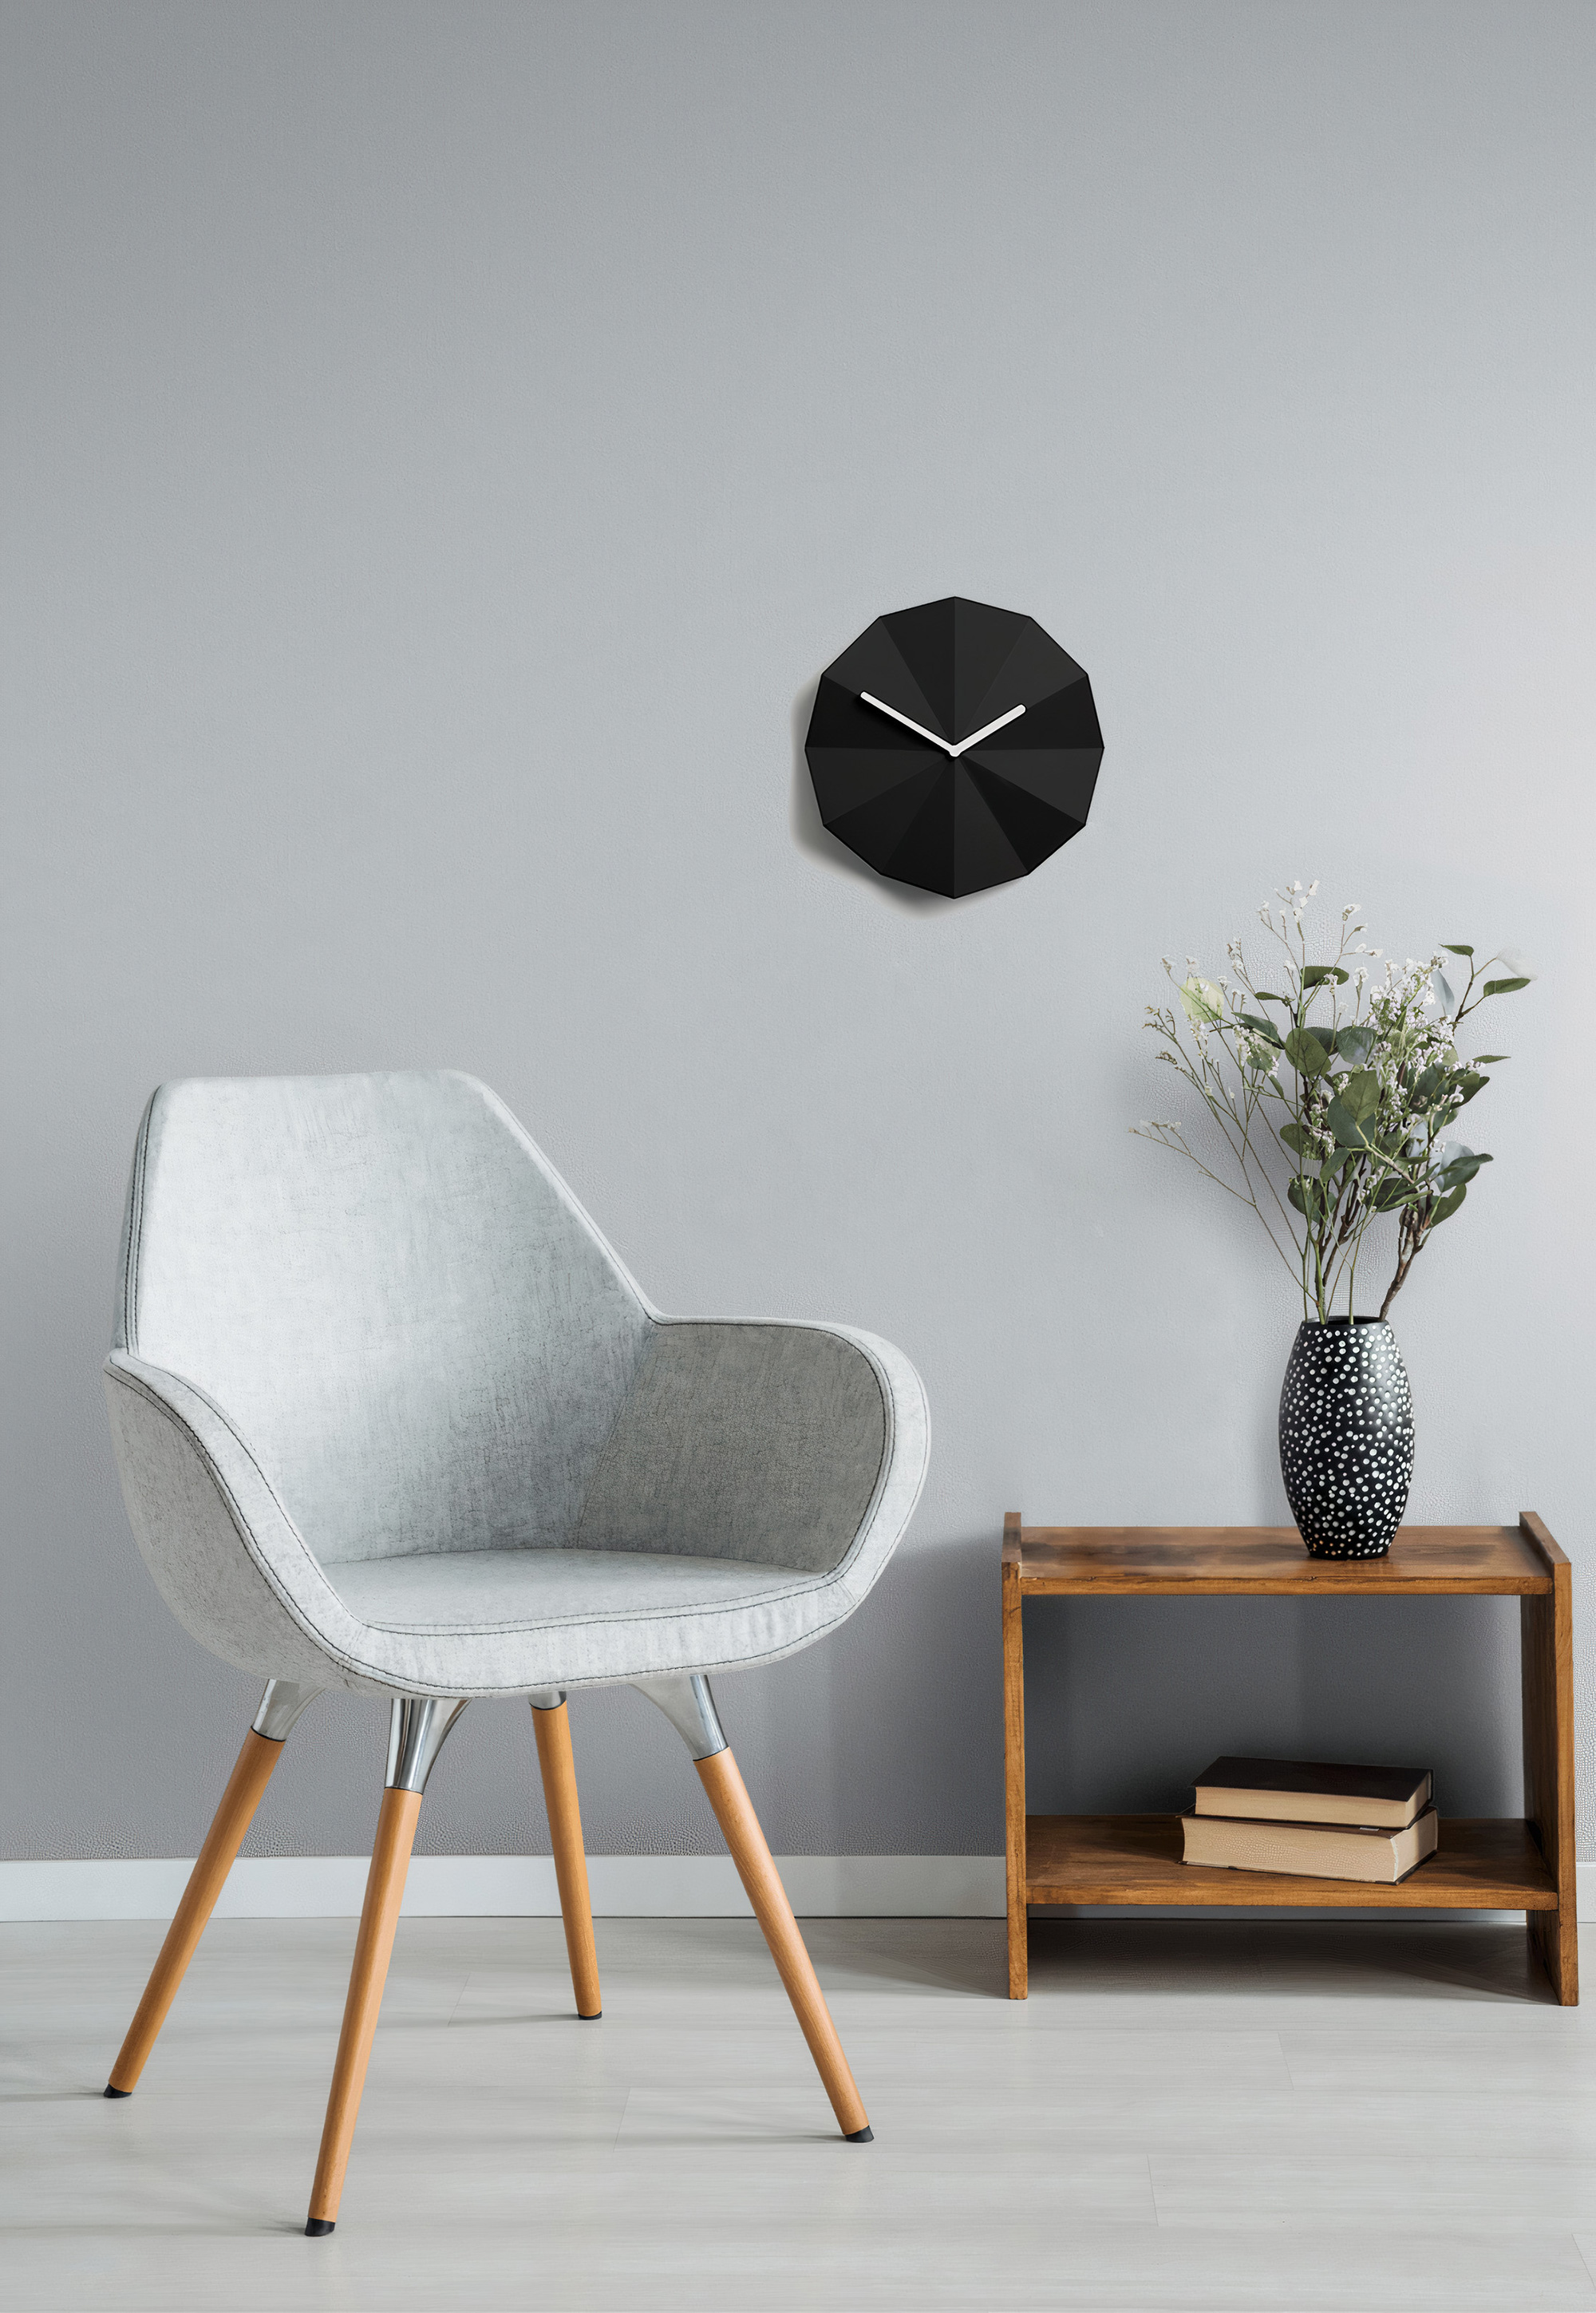 Lawa Design's Minimalist Delta Wall Clock - Gessato